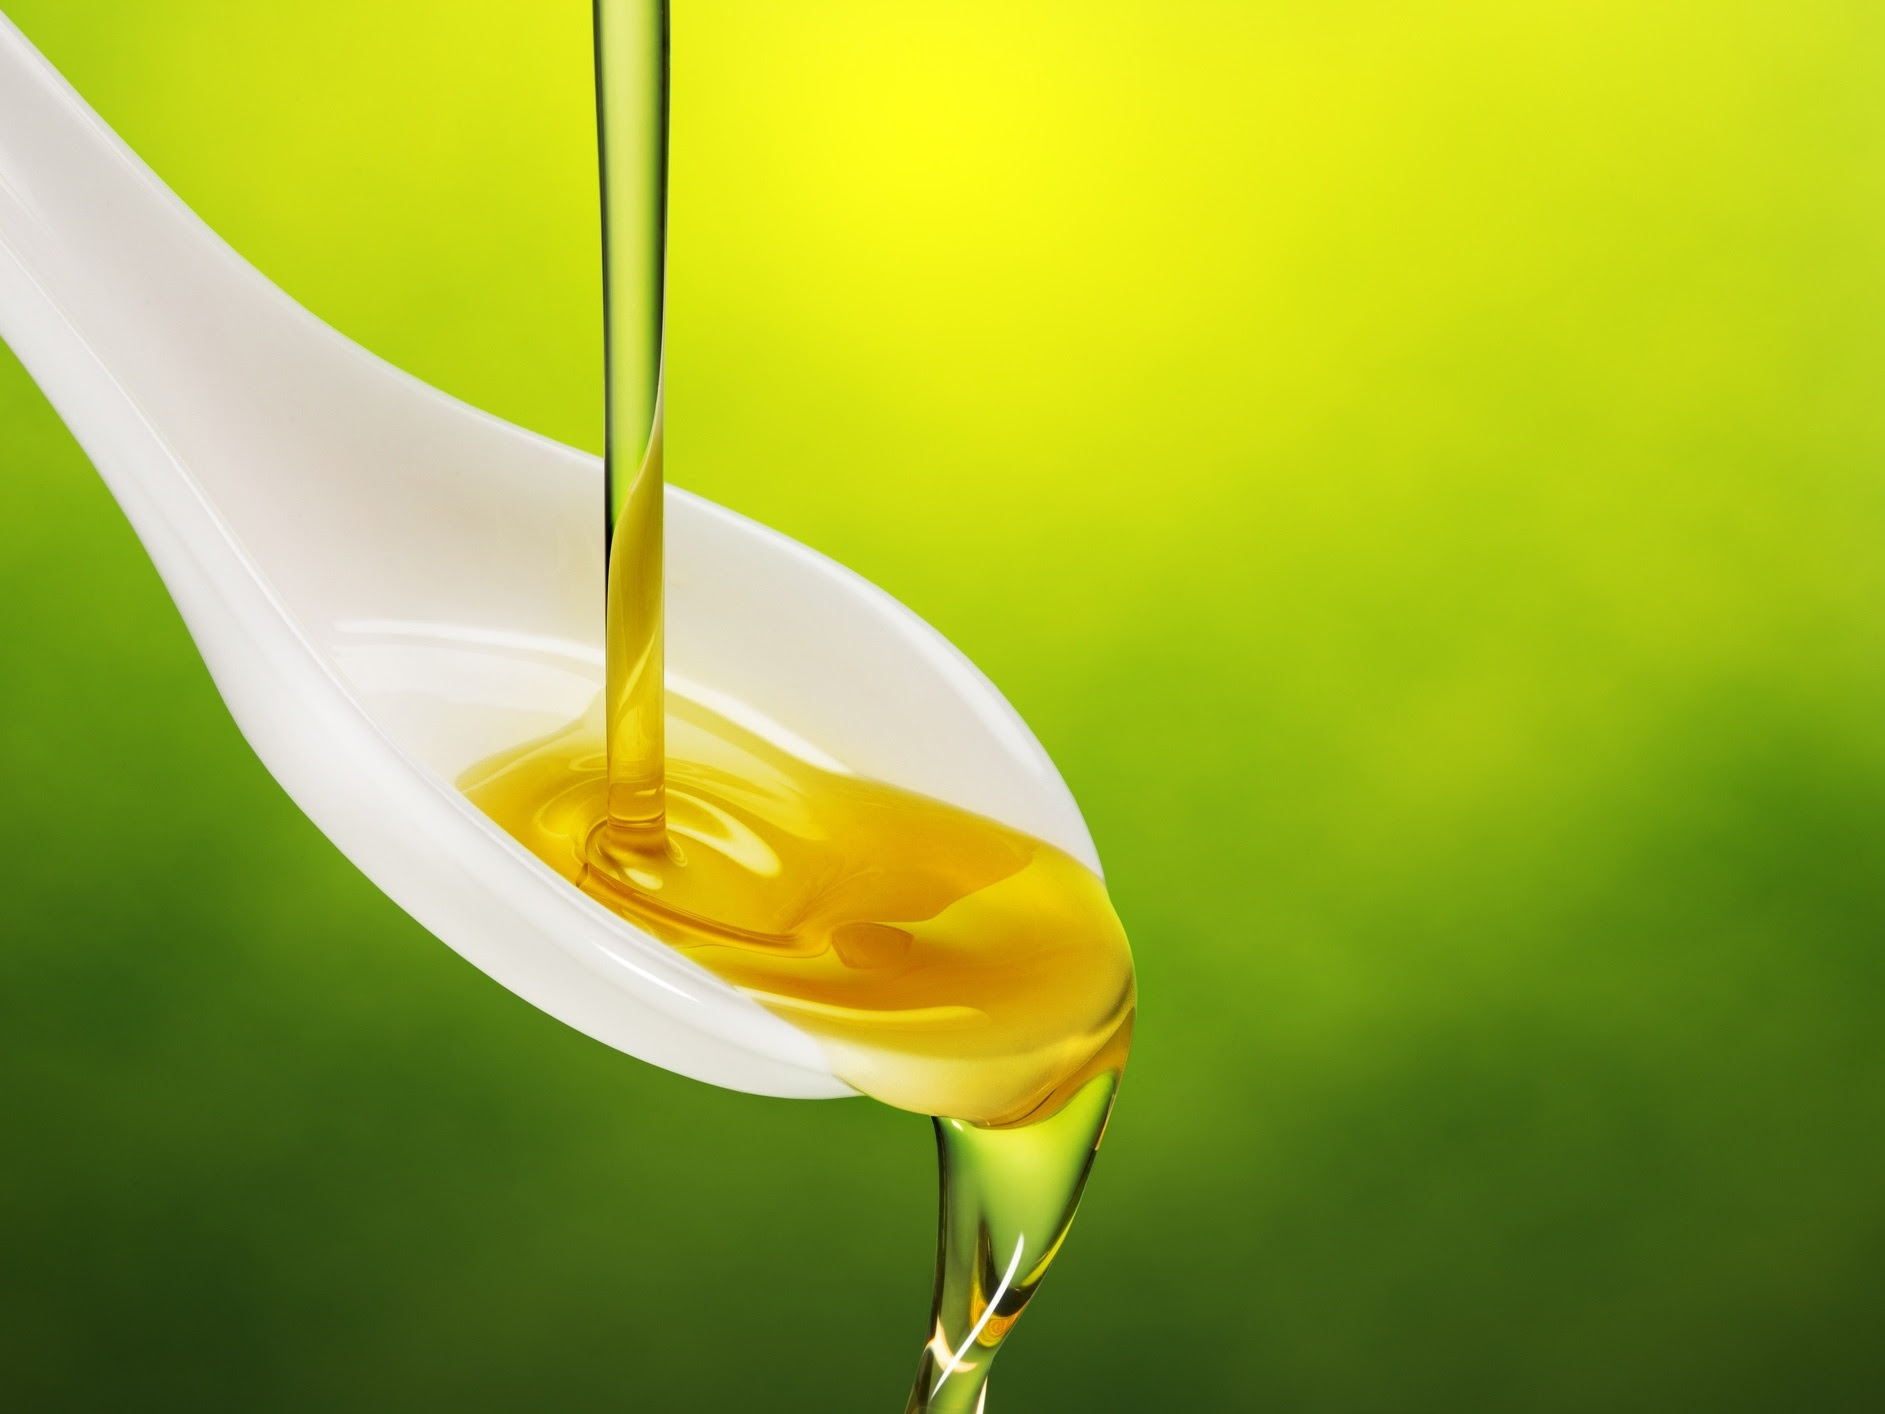 Agricultura suspende venda de 33 marcas de azeite de oliva fraudado